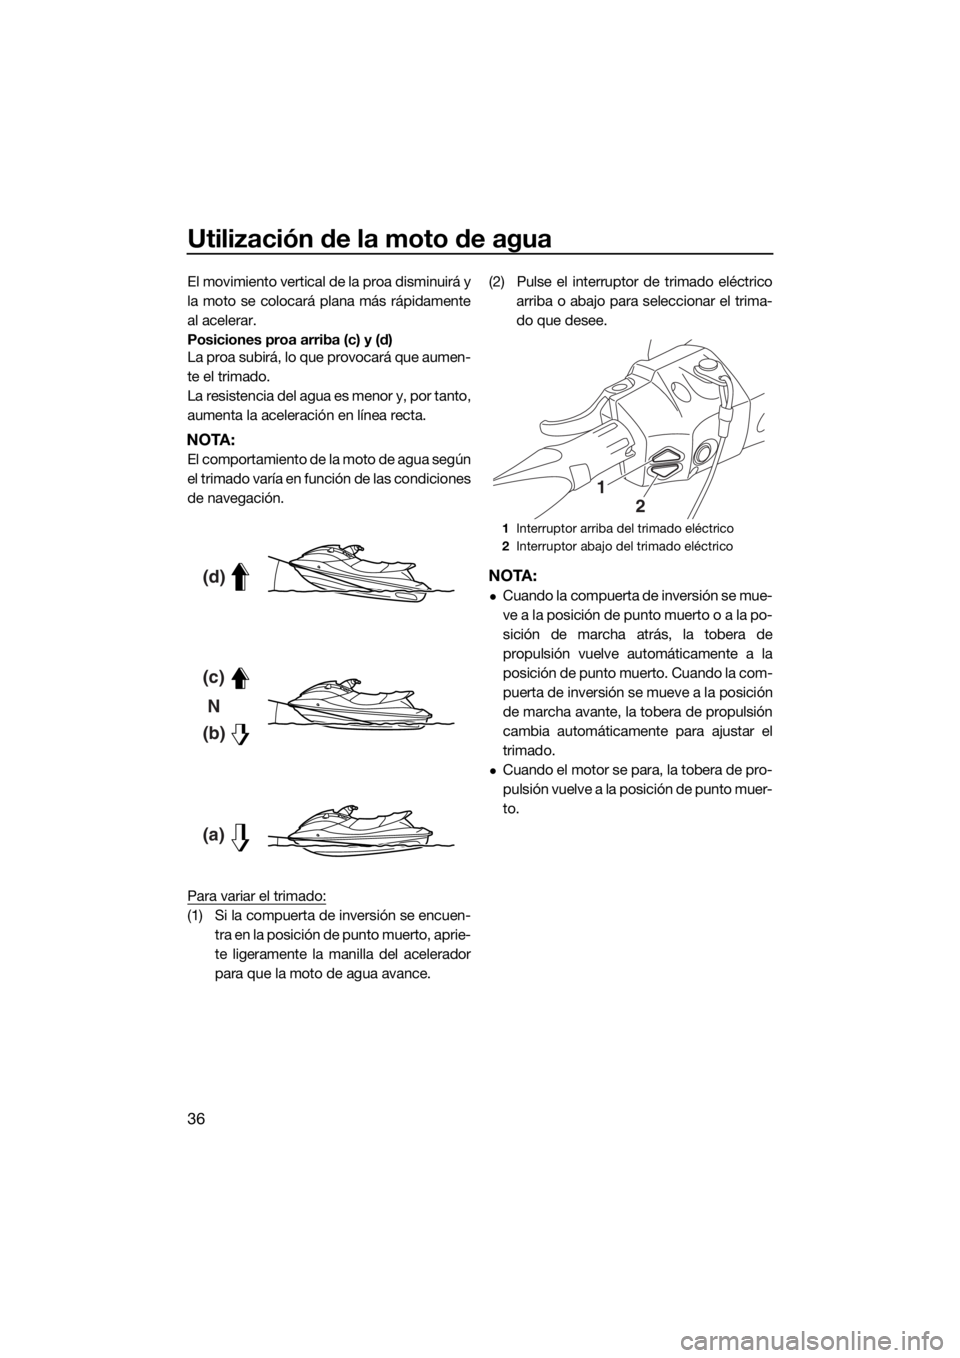 YAMAHA FX HO 2017  Manuale de Empleo (in Spanish) Utilización de la moto de agua
36
El movimiento vertical de la proa disminuirá y
la moto se colocará plana más rápidamente
al acelerar.
Posiciones proa arriba (c) y (d)
La proa subirá, lo que pr